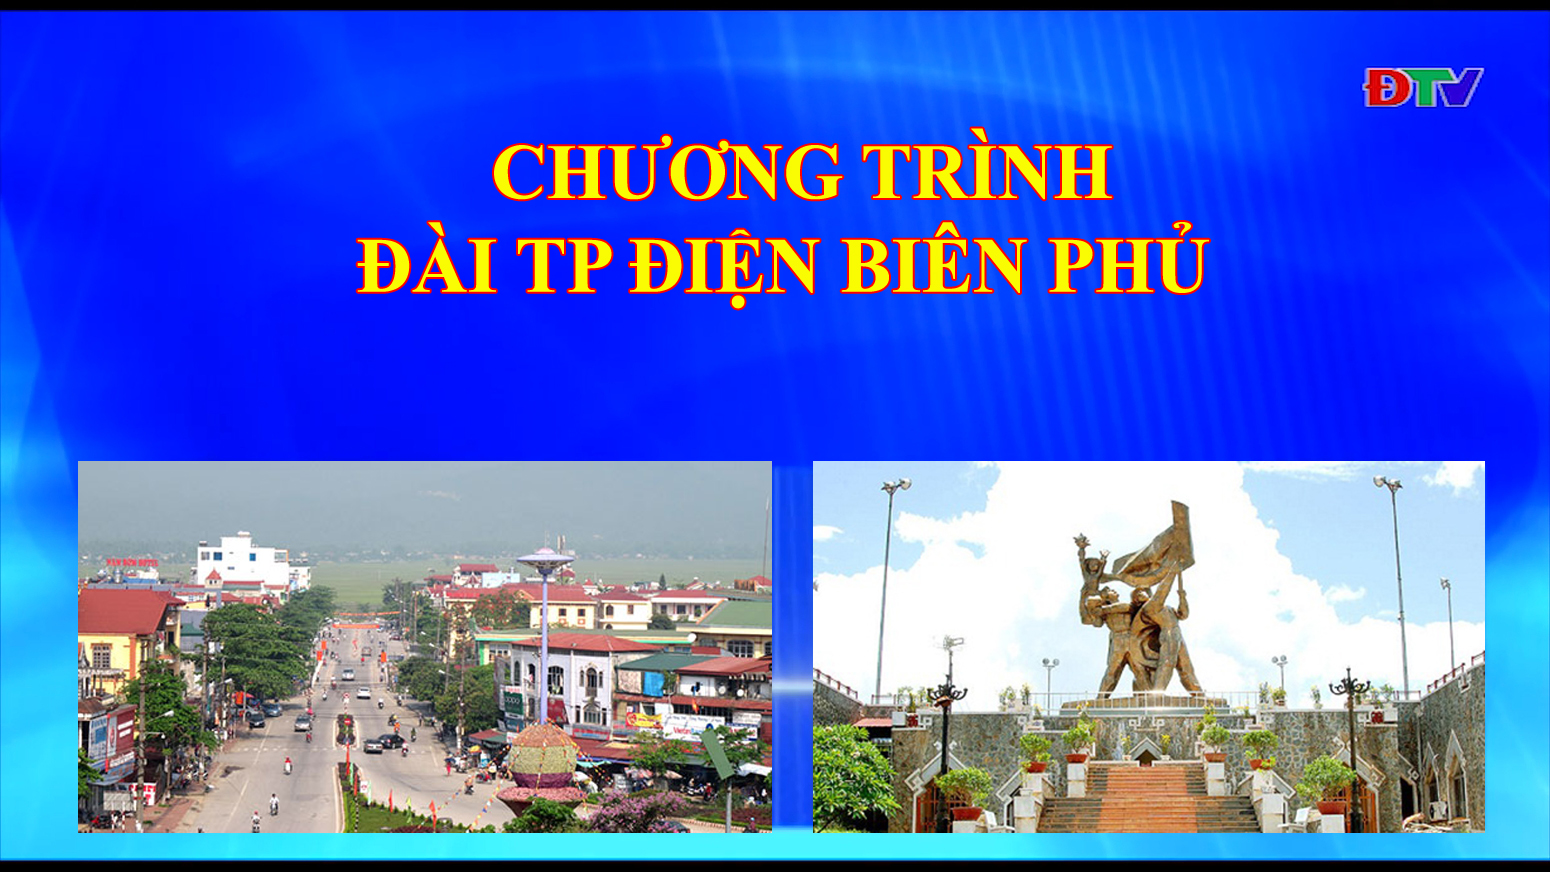 Đài thành phố Điện Biên Phủ (ngày 17-9-2019)